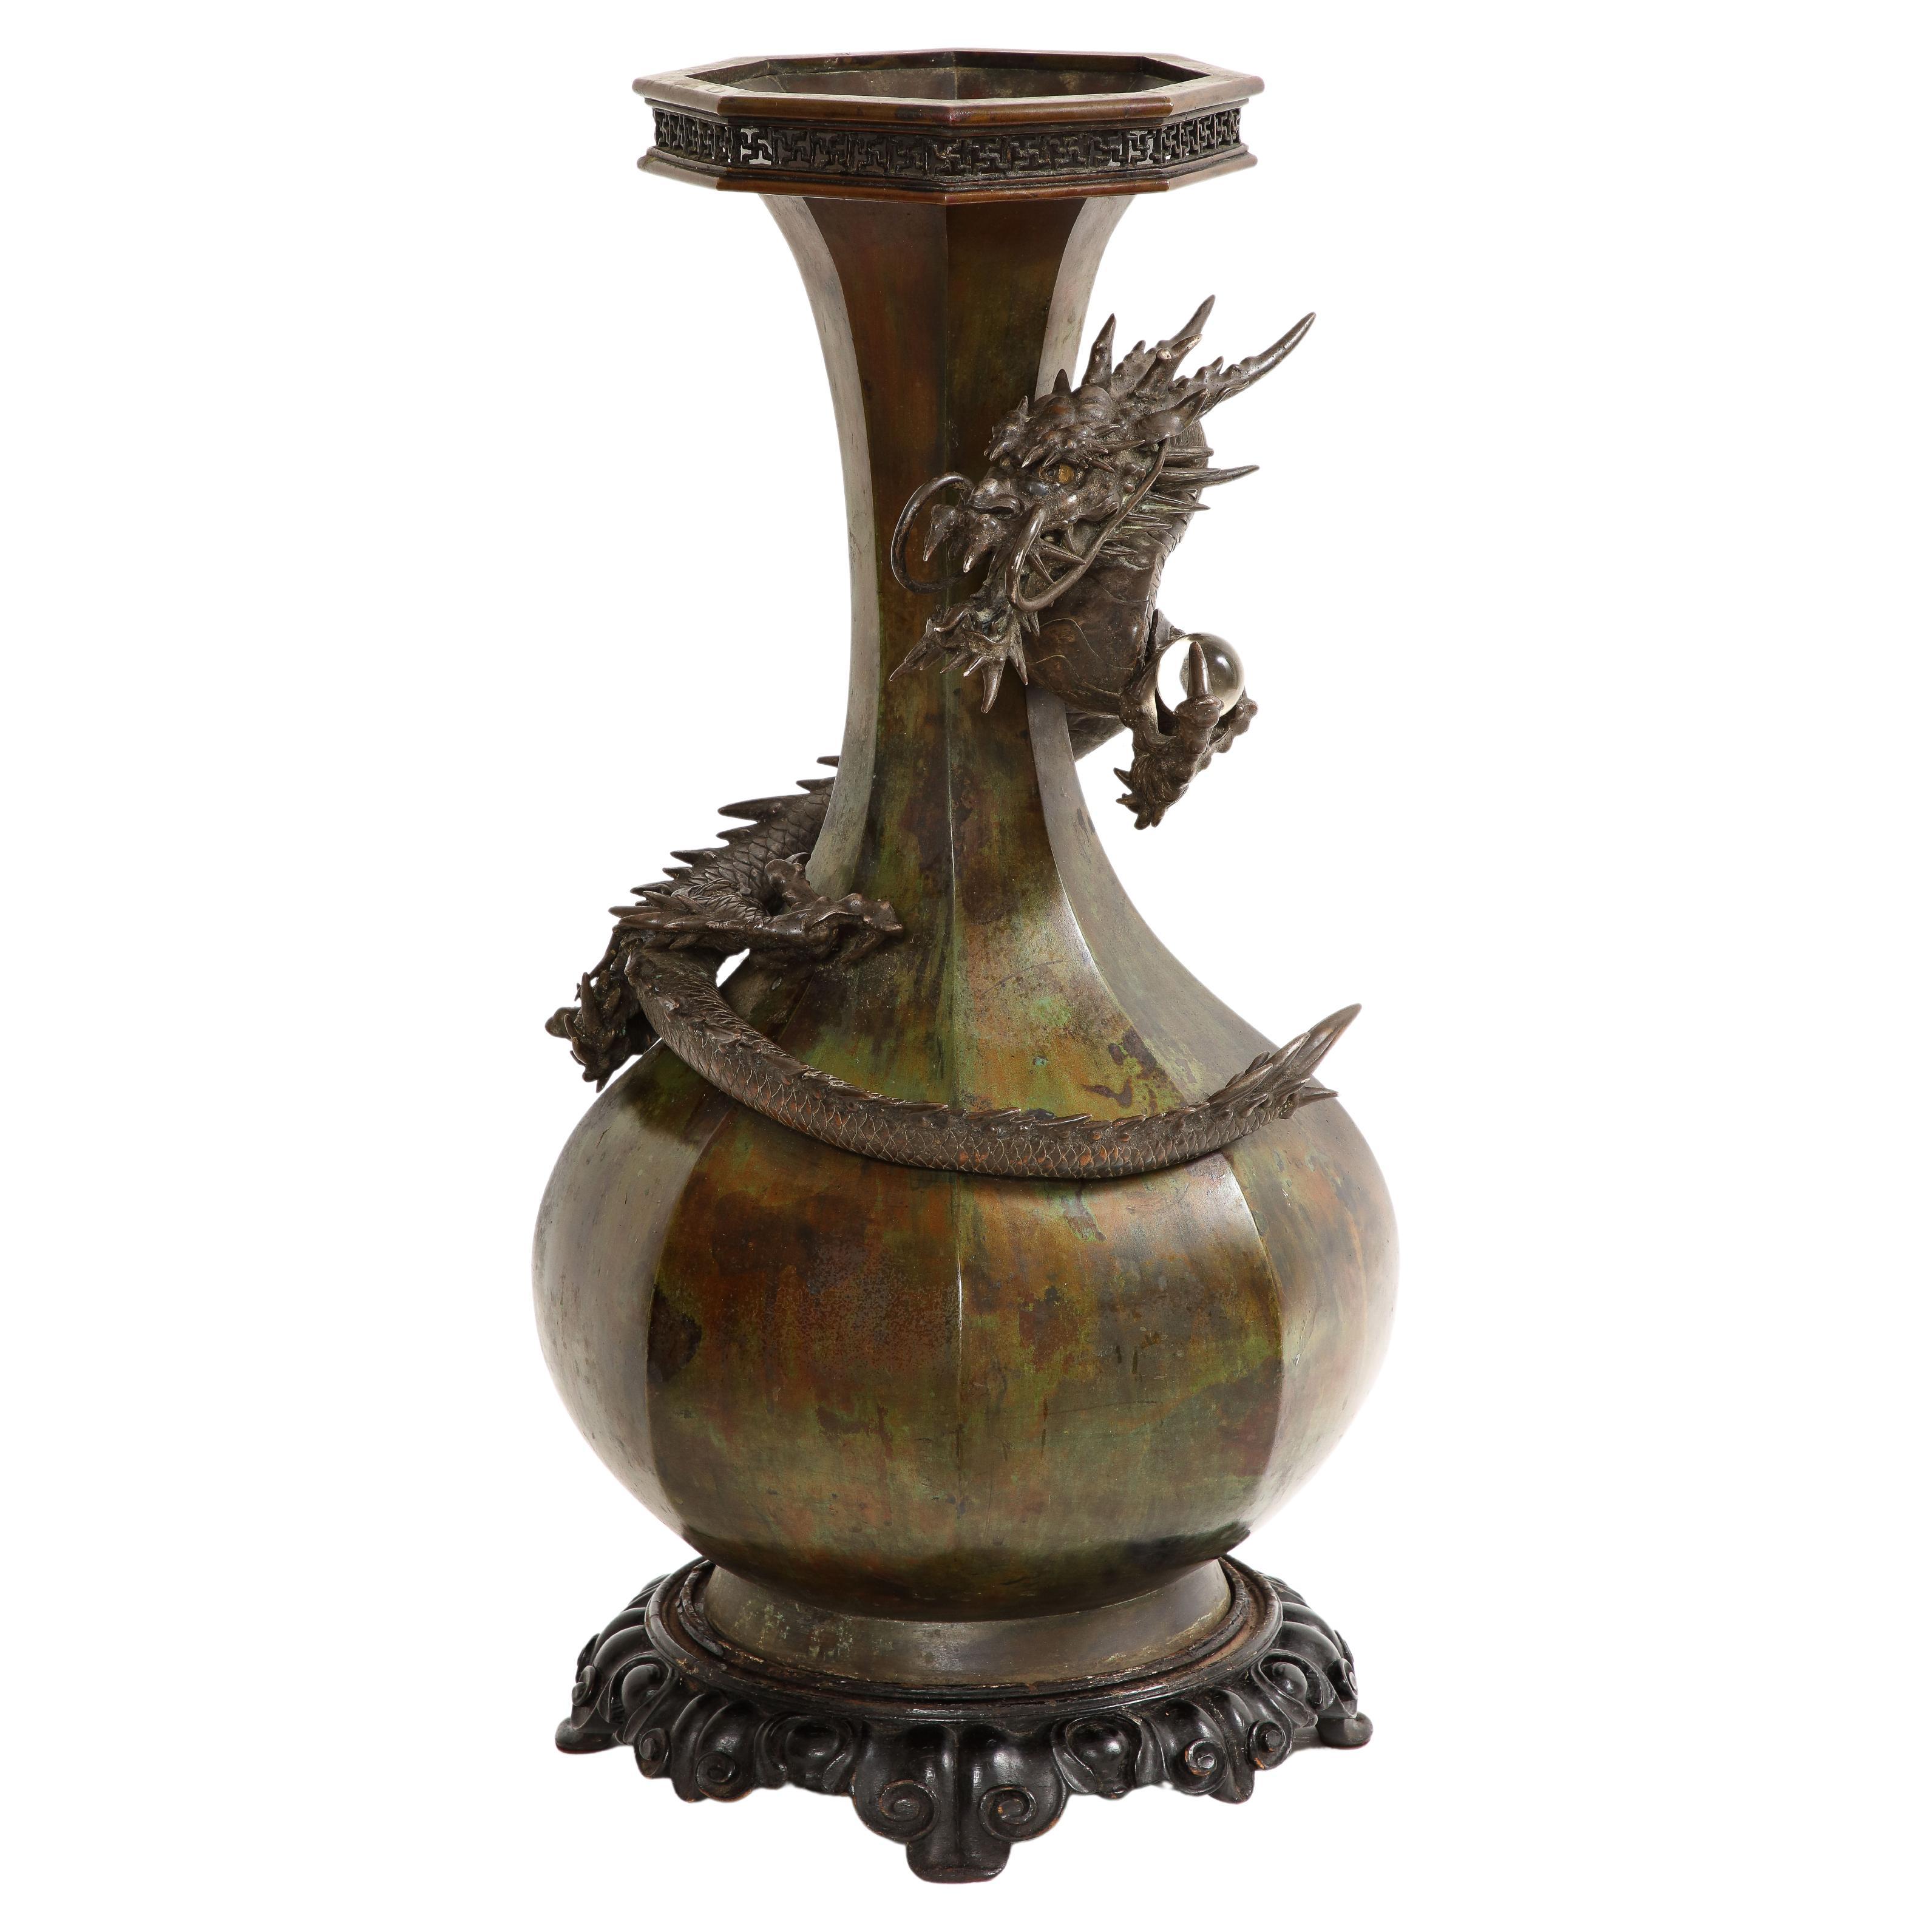 Très grand et magnifique vase dragon japonais en bronze patiné de la période Meji